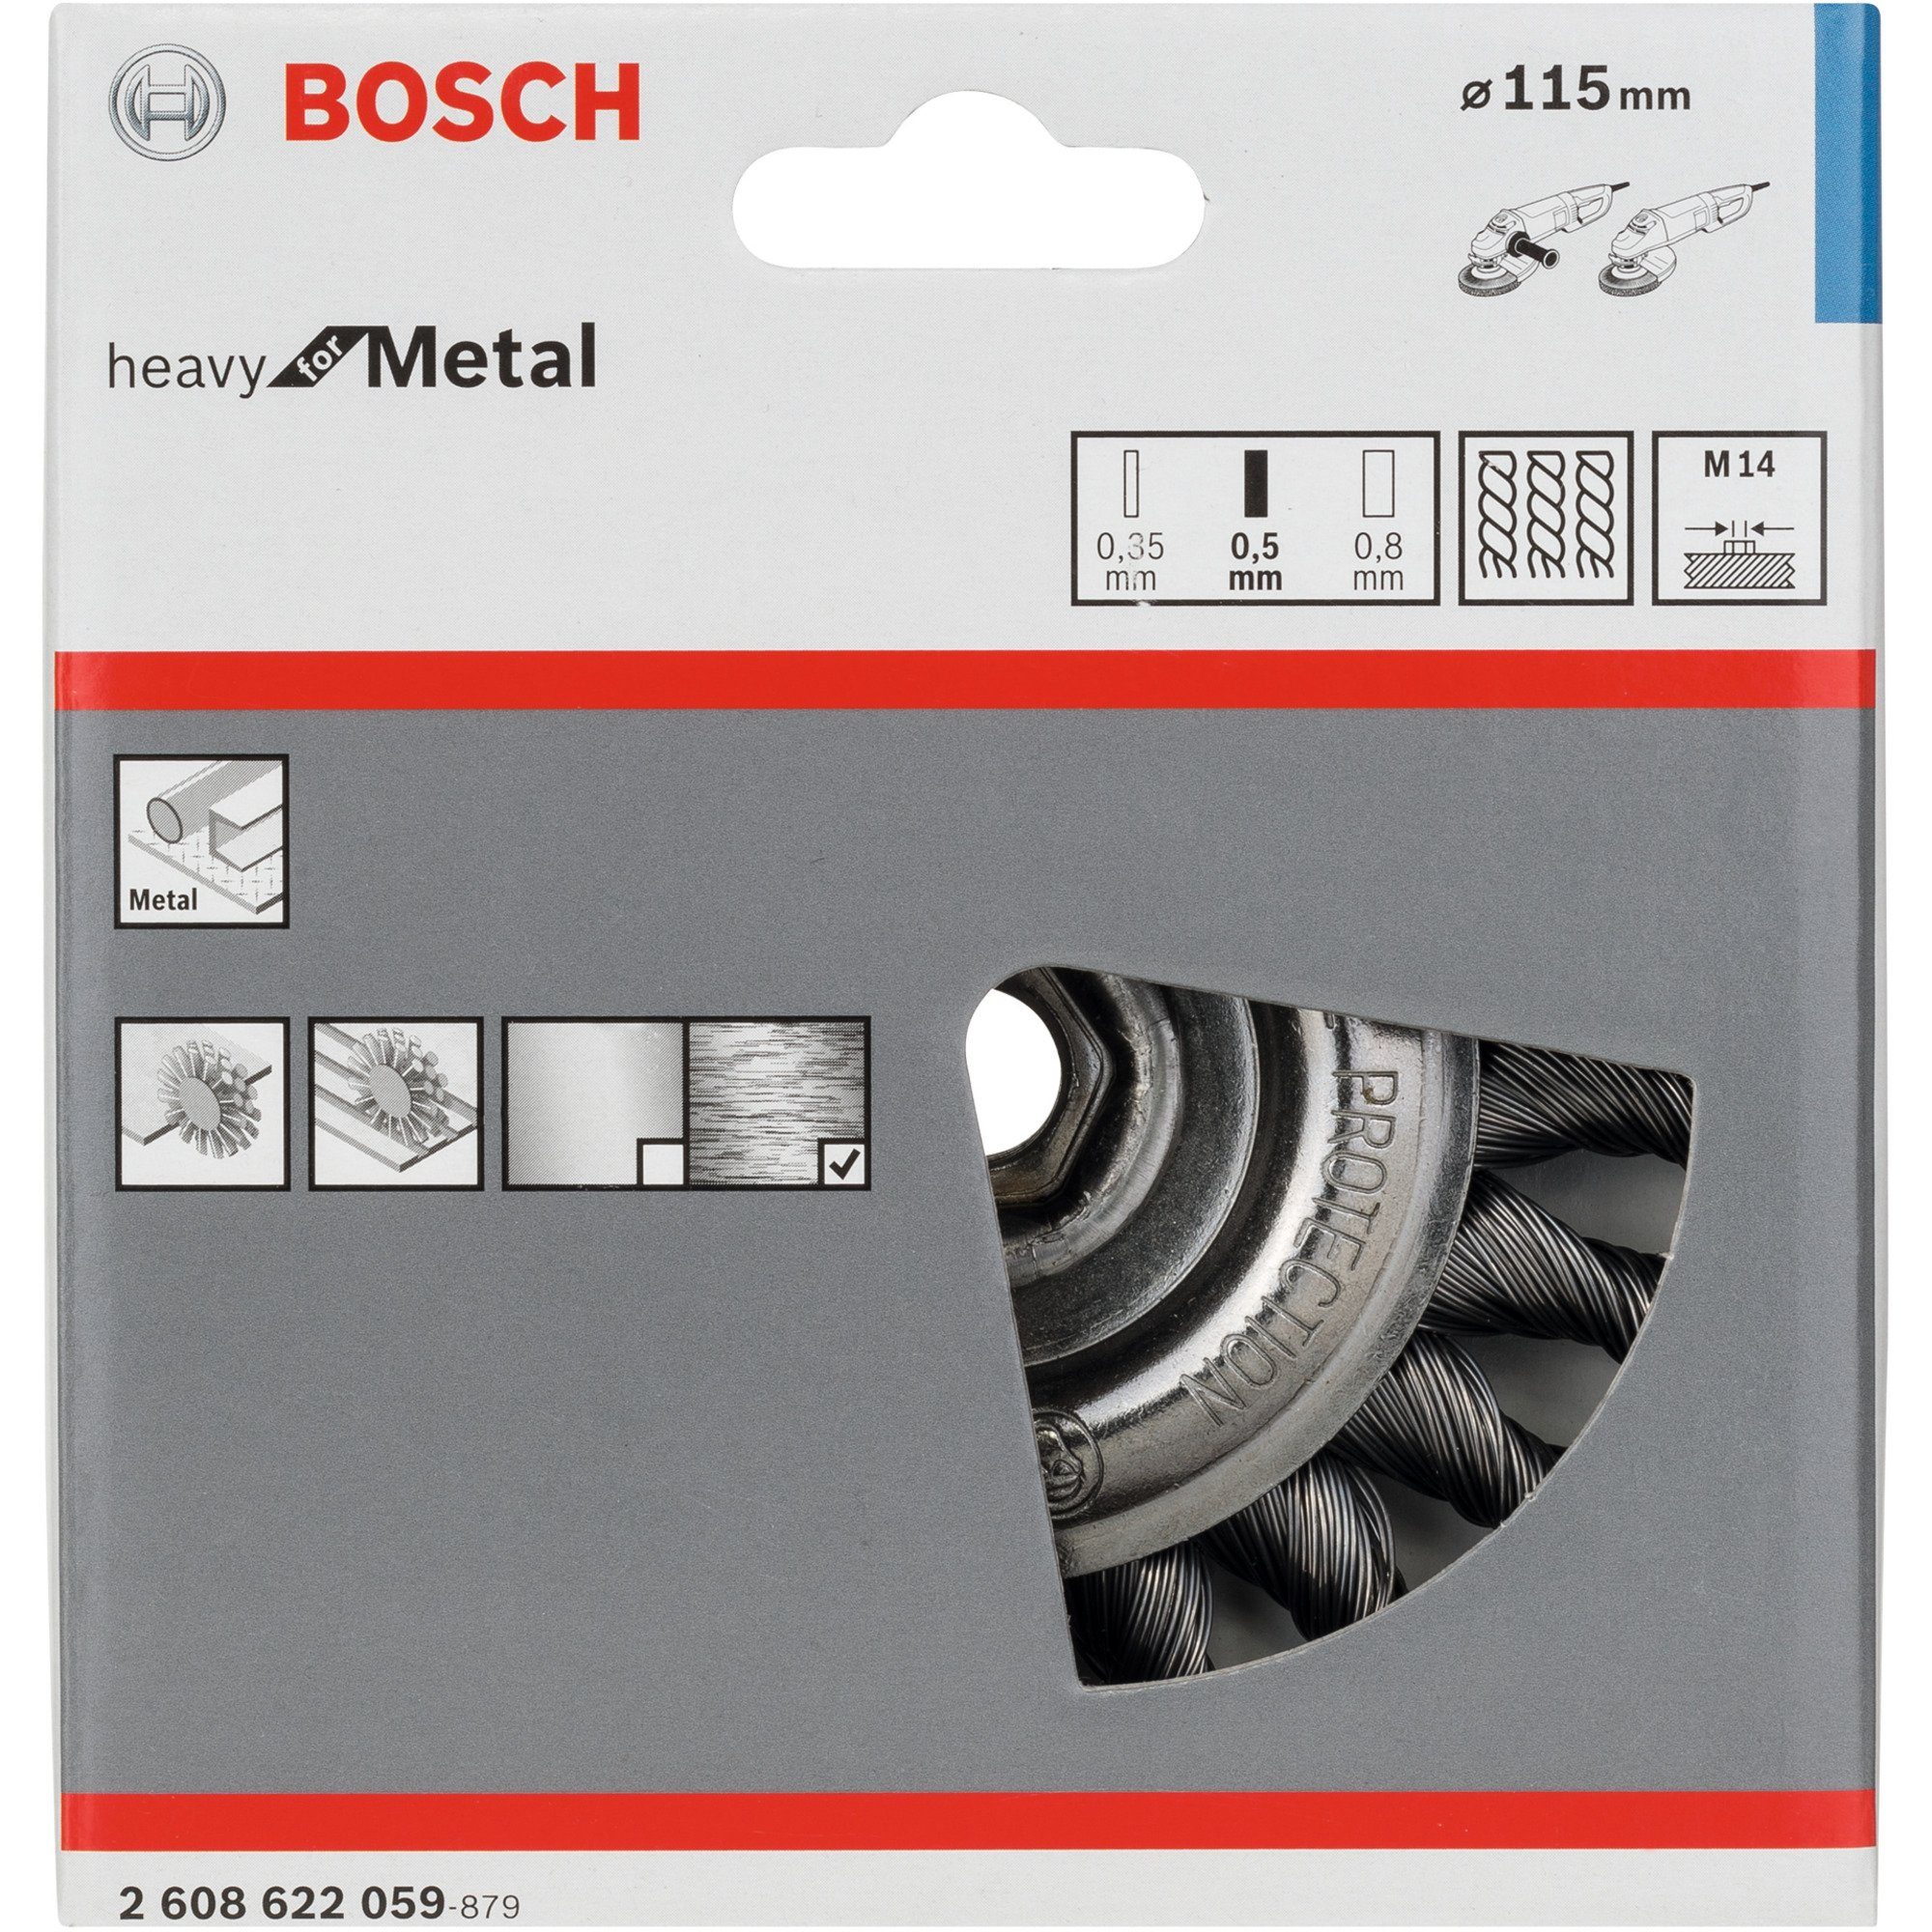 Schleifscheibe BOSCH Bosch for Professional Scheibenbürste Metal Heavy